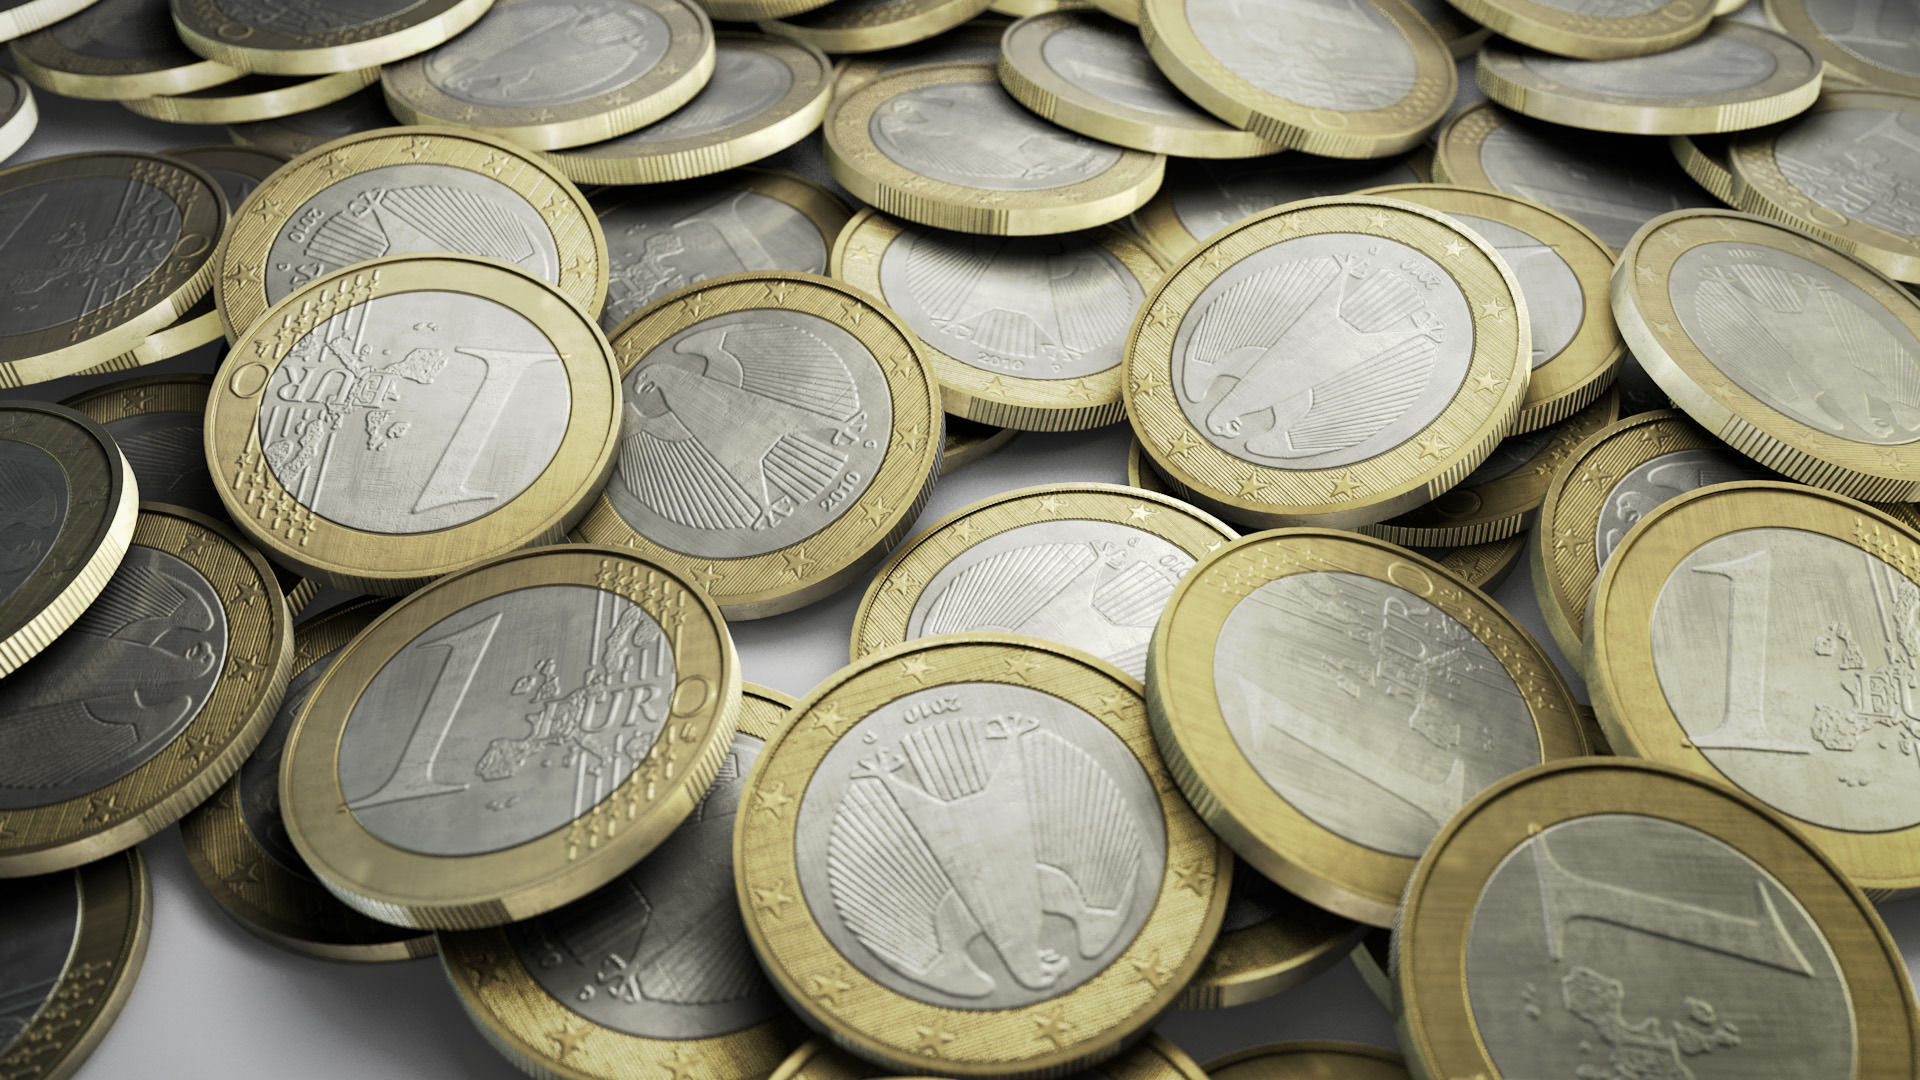 Σημαντική πτώση για το ευρώ έπειτα από τις δηλώσεις του επικεφαλής της ΕΚΤ